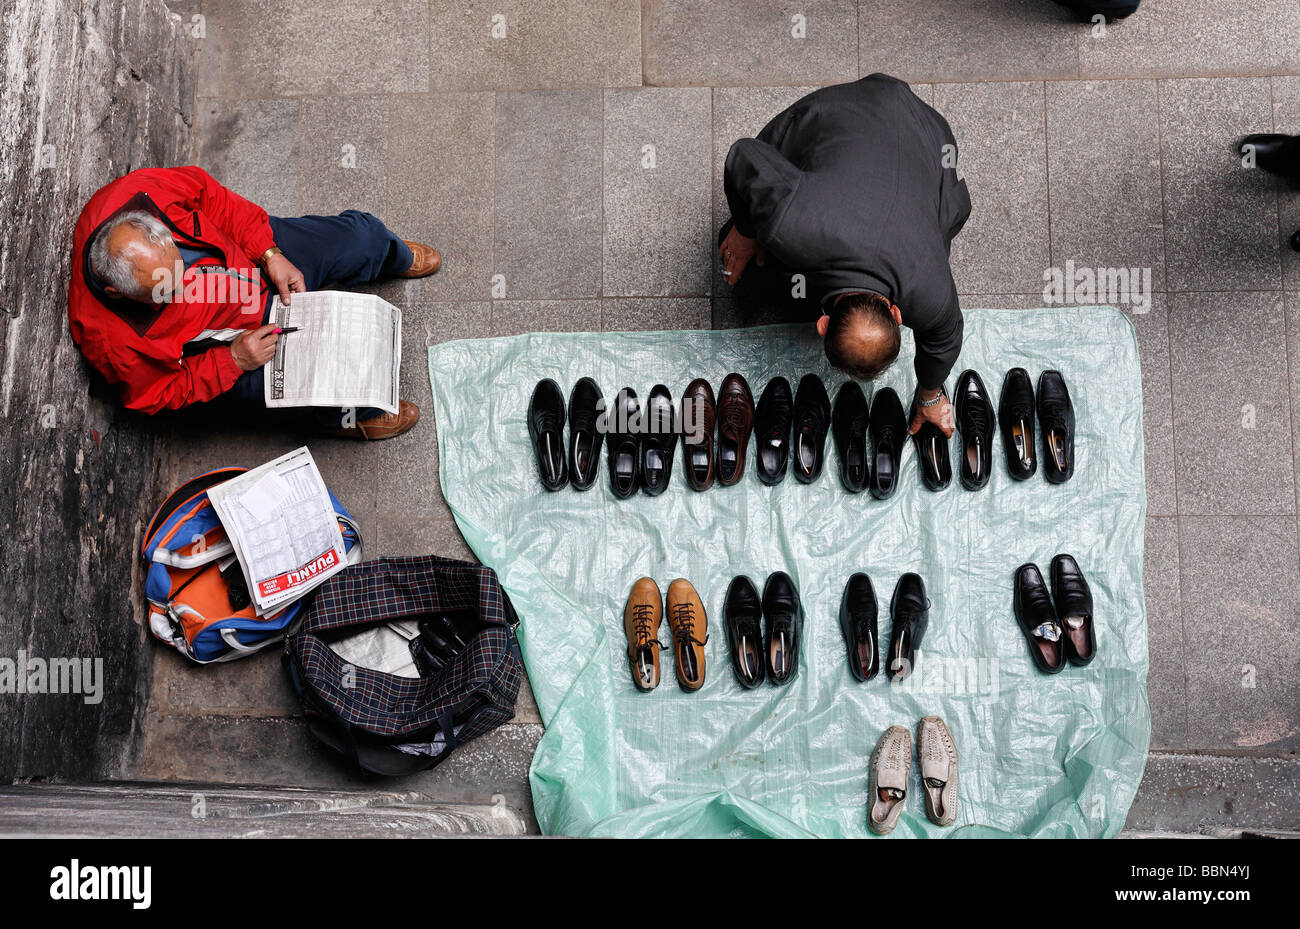 Mann vende scarpe usate su strada, un cliente arriva per una calzatura, vista da sopra, Istanbul, Turchia Foto Stock